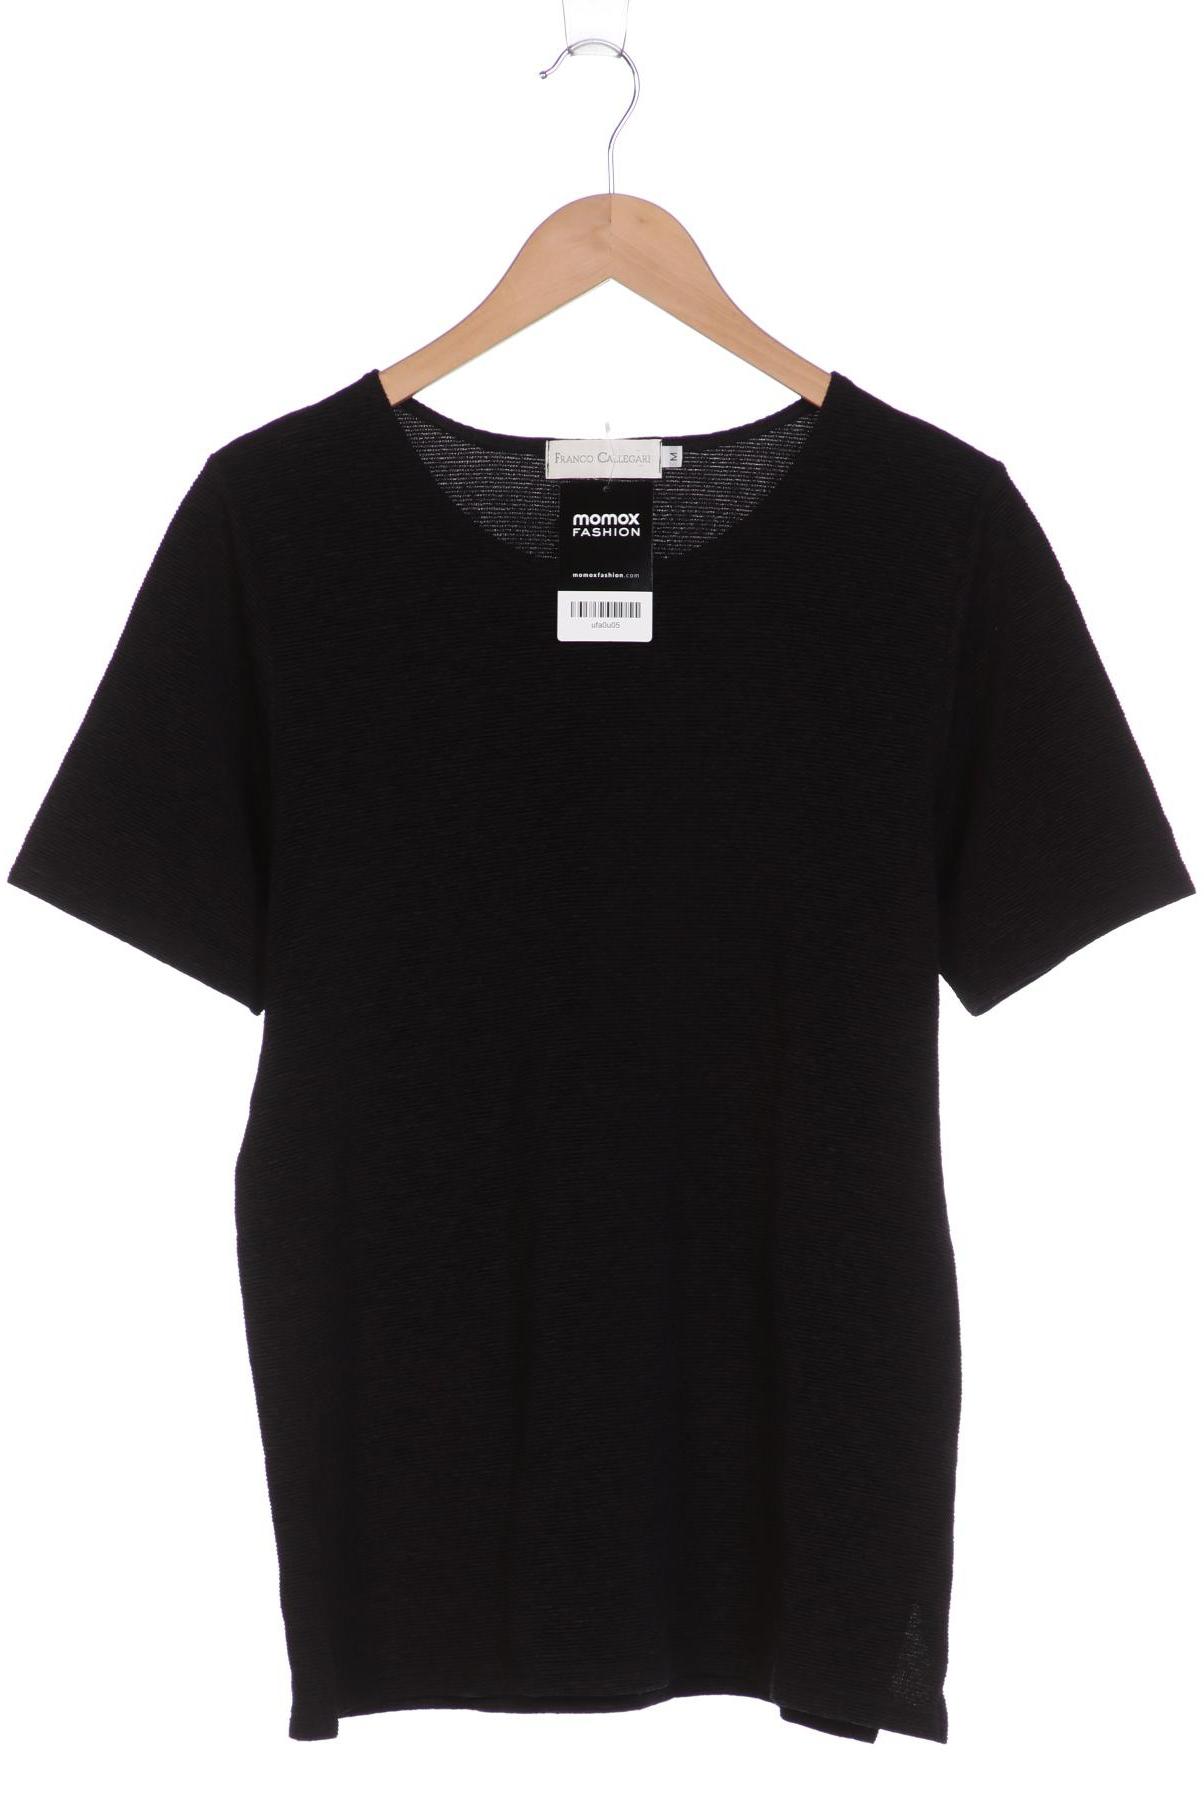 FRANK WALDER Damen T-Shirt, schwarz von FRANK WALDER